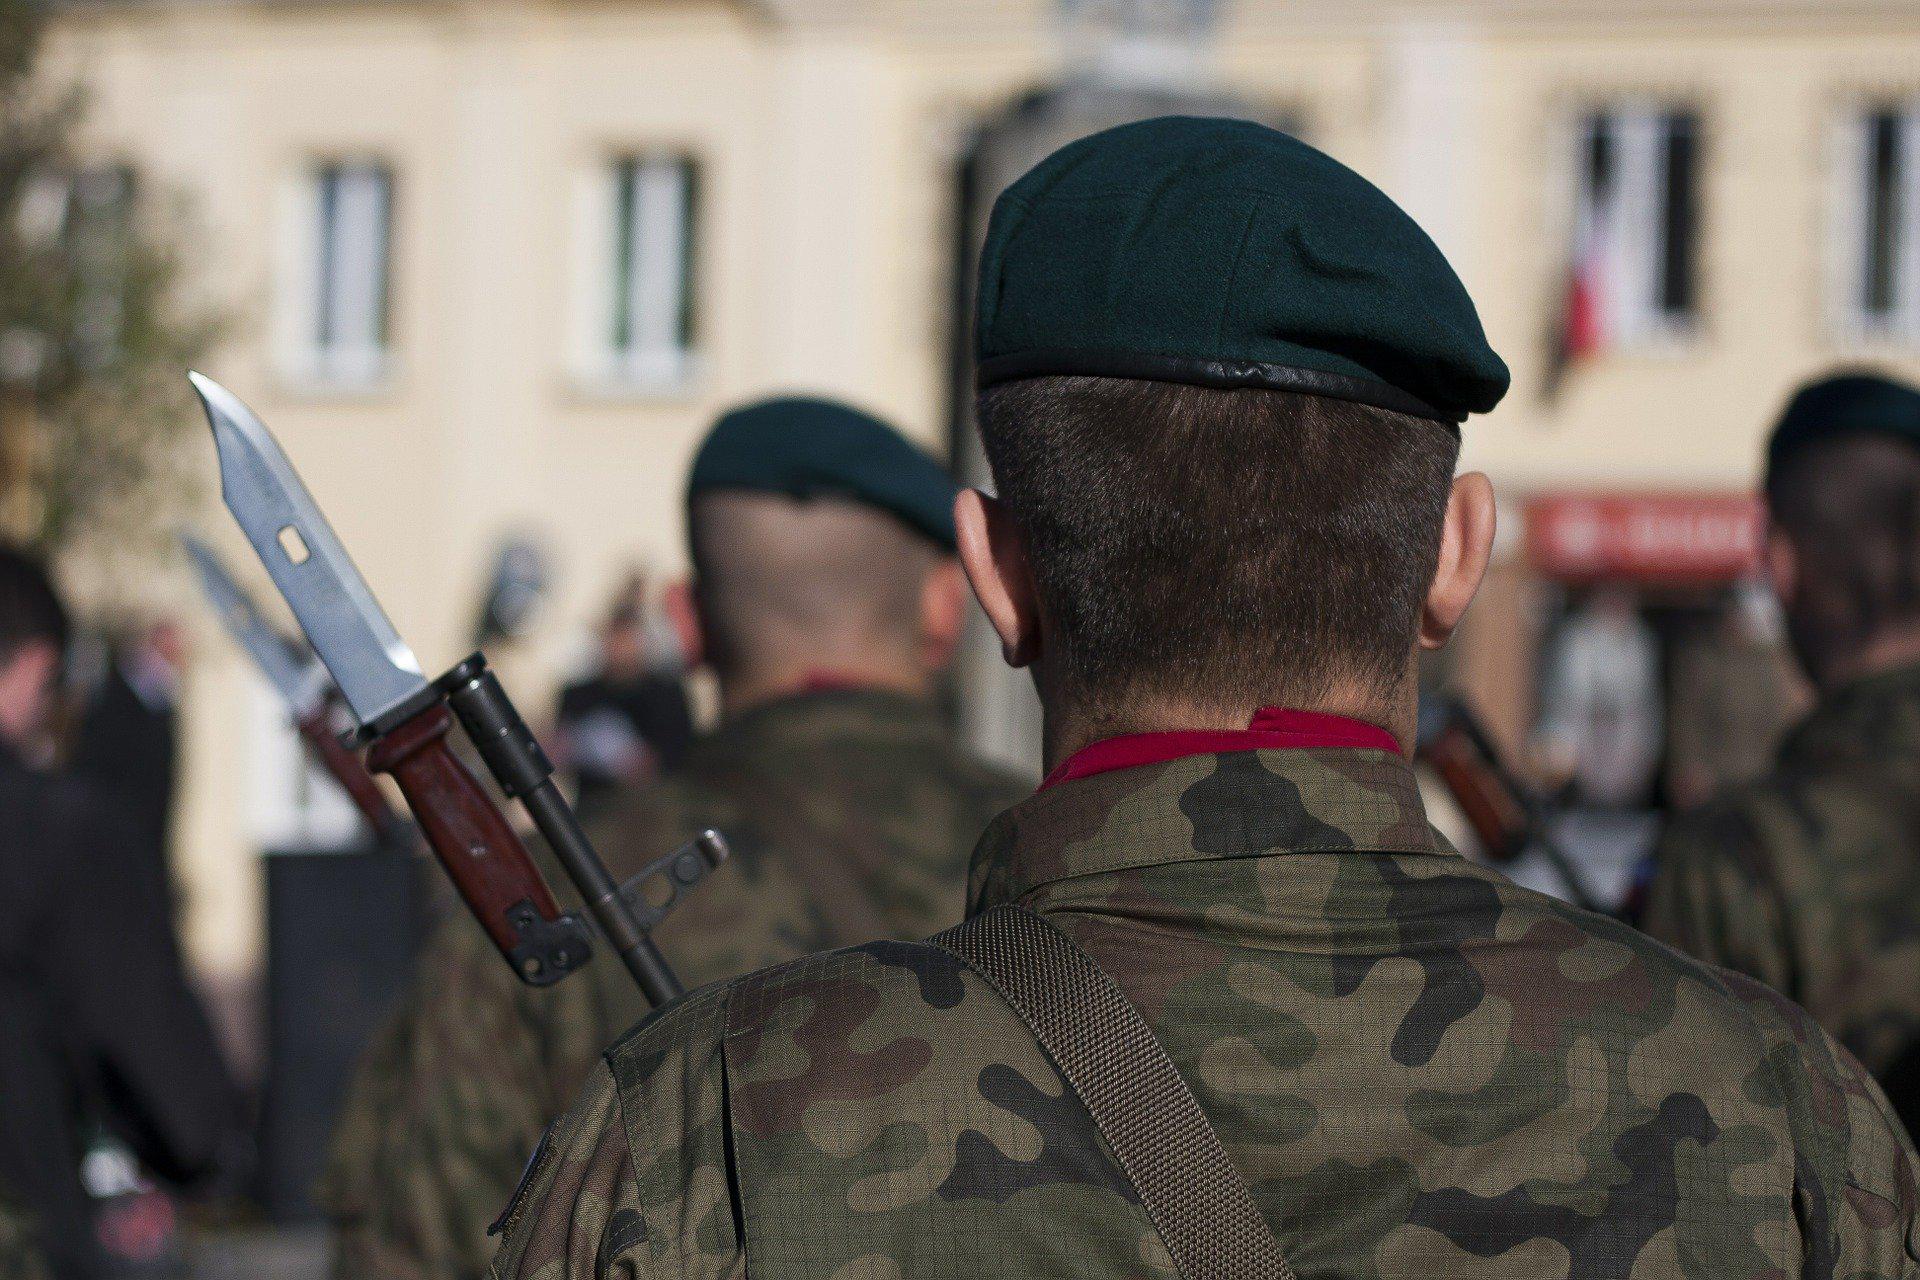 Kwalifikacja wojskowa 2020 w Białymstoku: Kogo dotyczy? Znamy terminy